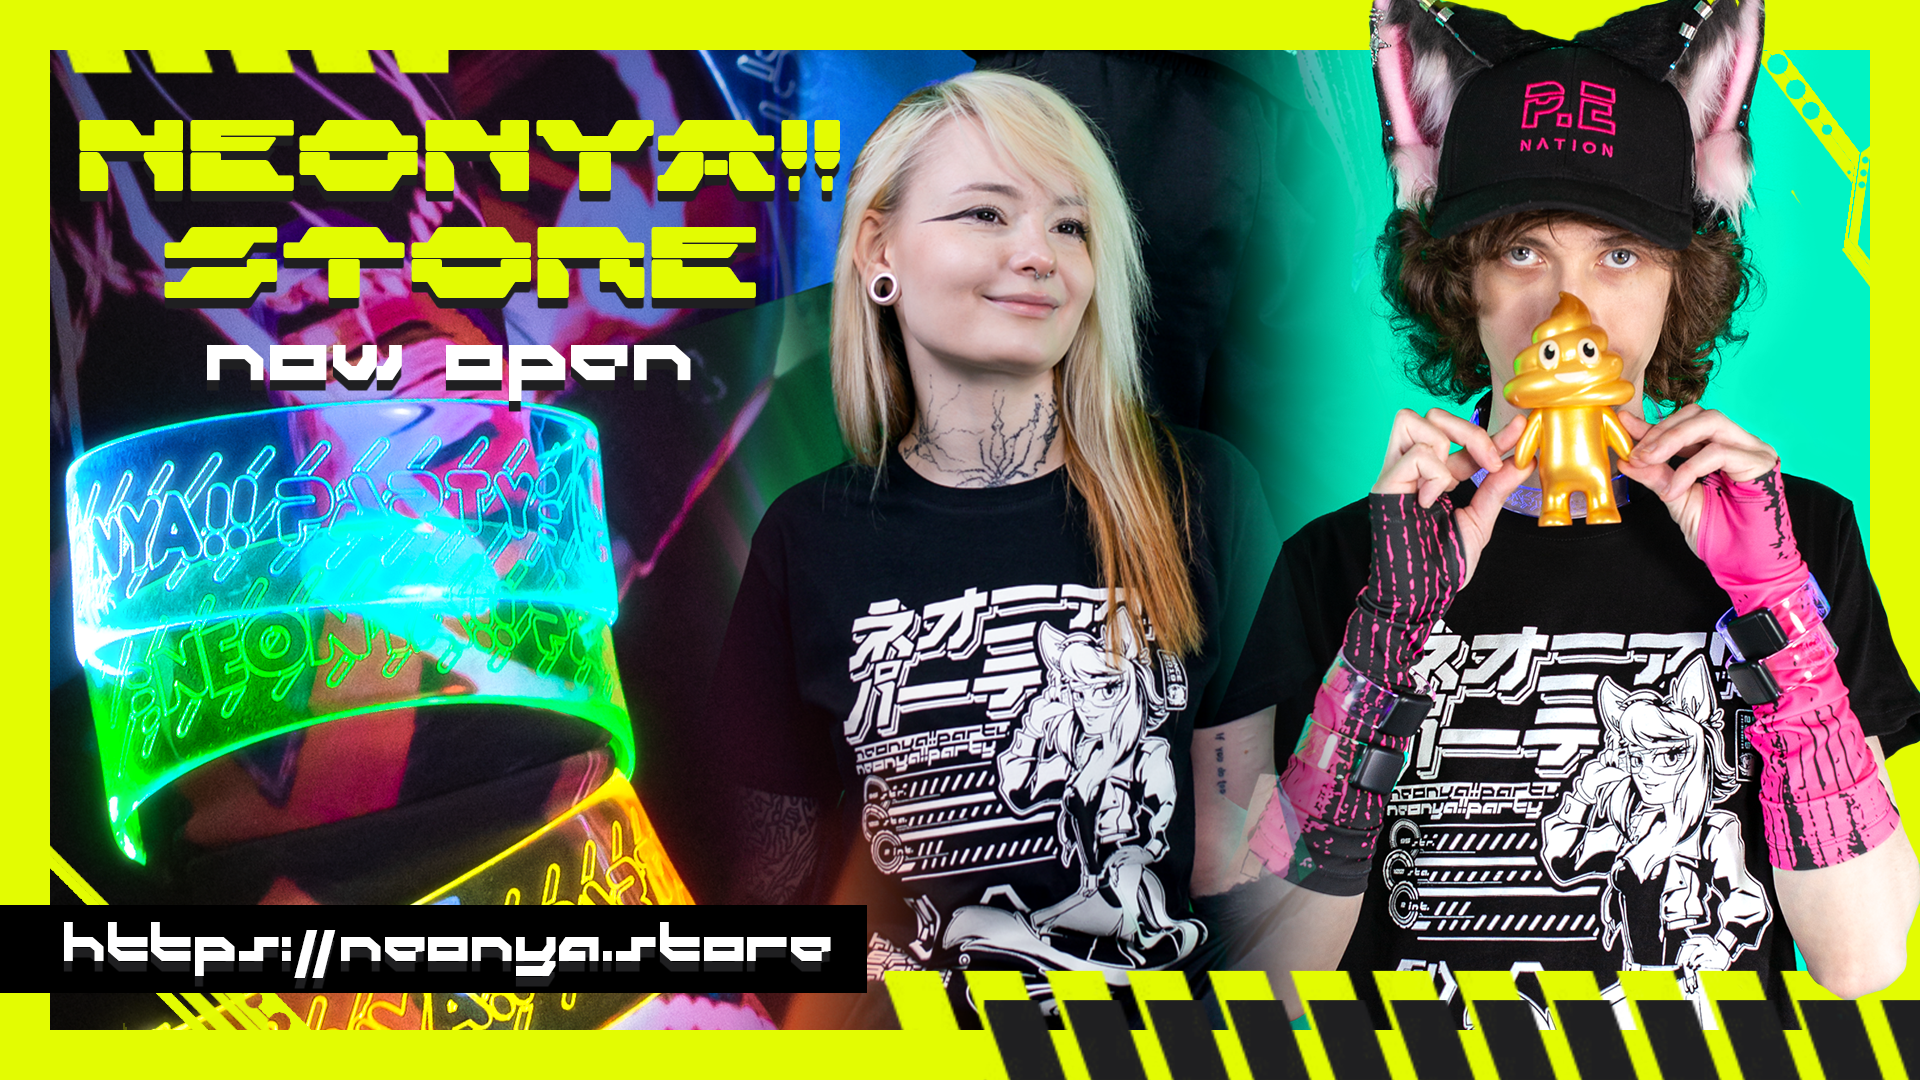 Neonya!! Store now open!